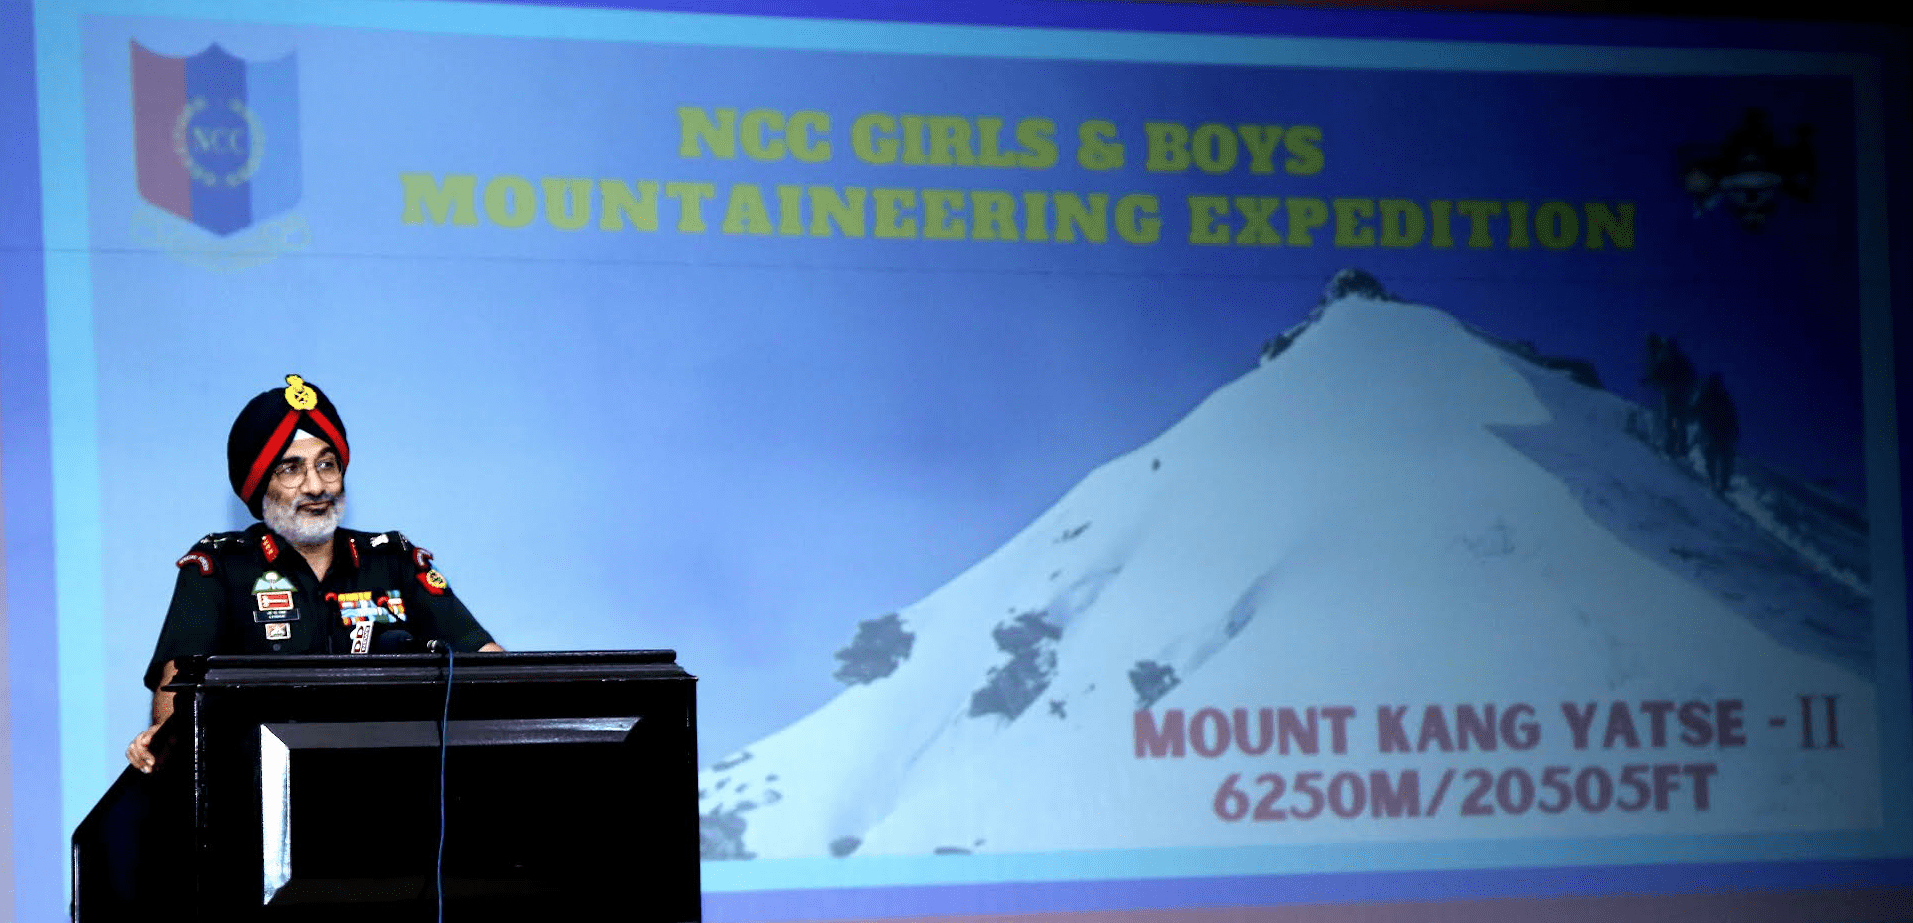 लद्दाख क्षेत्र में माउंट कांग यात्से-II की चढ़ाई के लिए युवा पर्वतारोहण अभियान को हरी झंडी दिखाकर रवाना किया